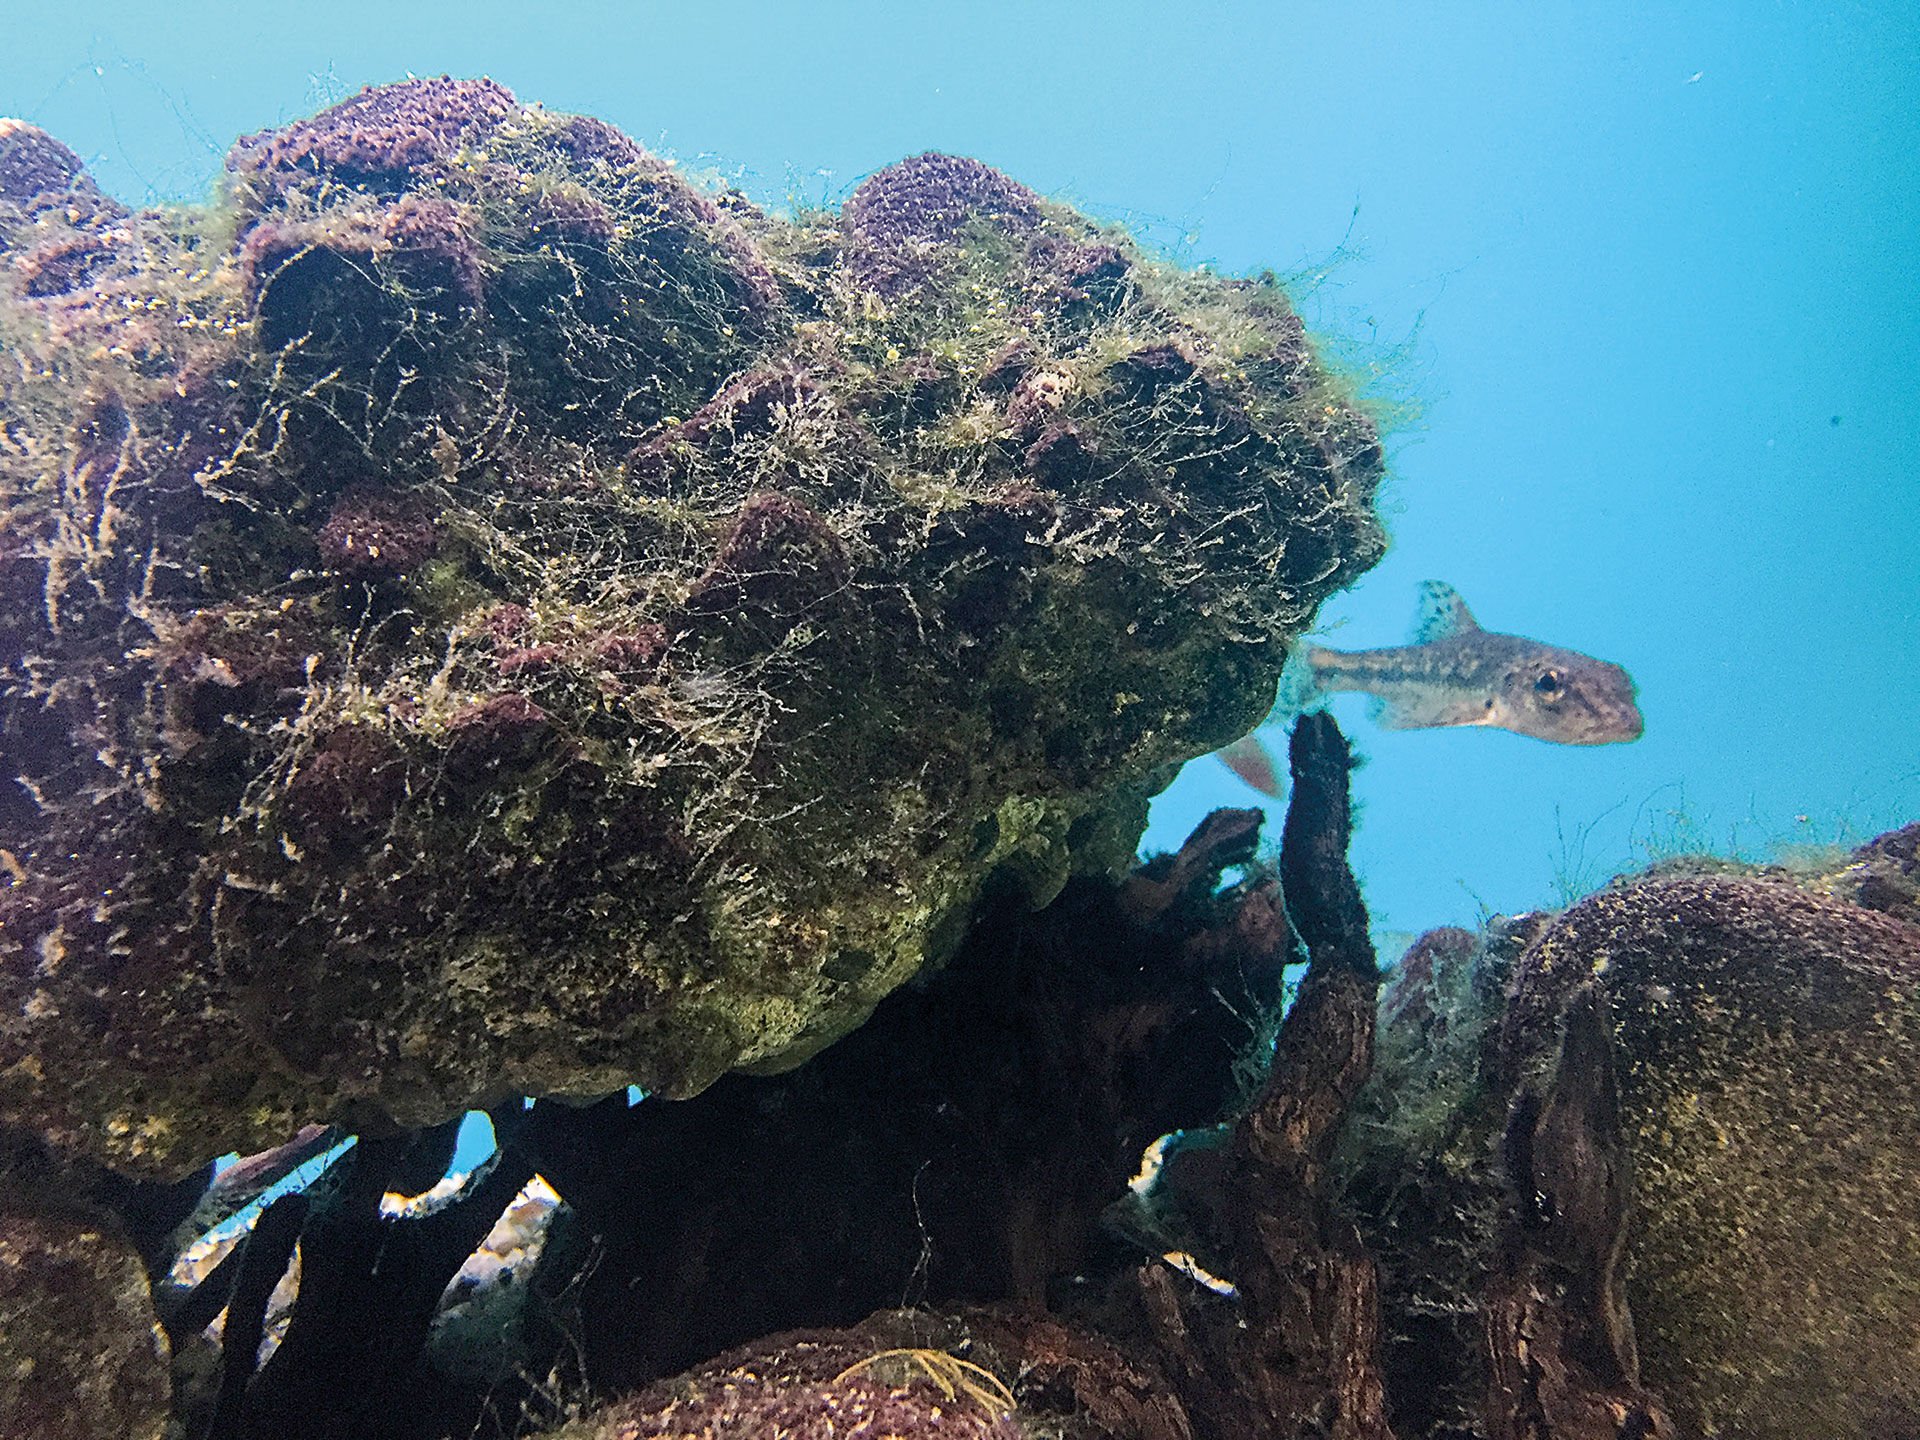  Fische lieben Strukturen – auch im Aquarium sind grosse Steine und Schwemmholz eine Bereicherung.  